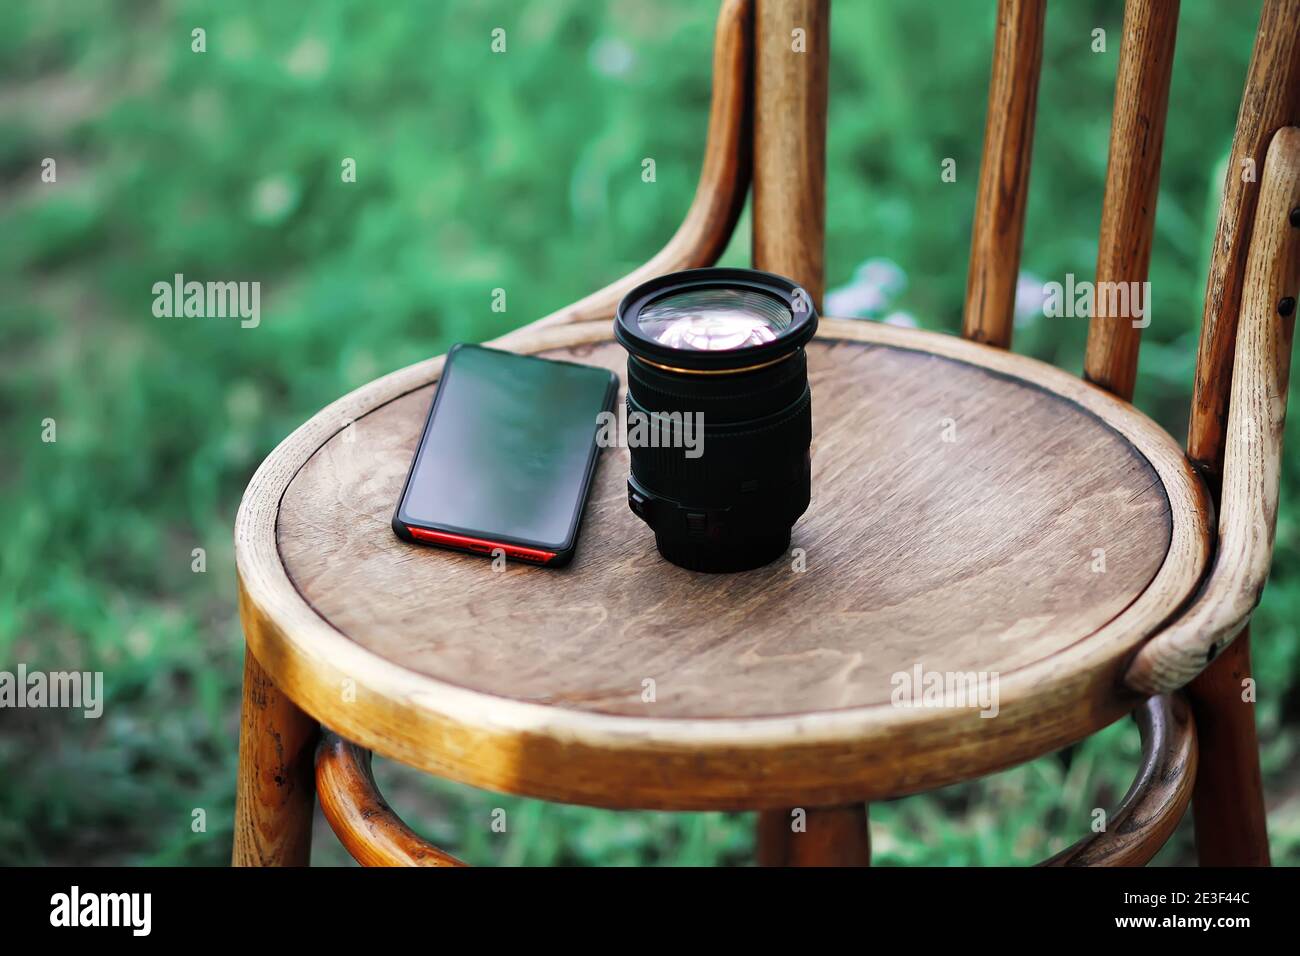 Lente de cámara digital y teléfono móvil en el antiguo vienne sillas al aire libre Foto de stock